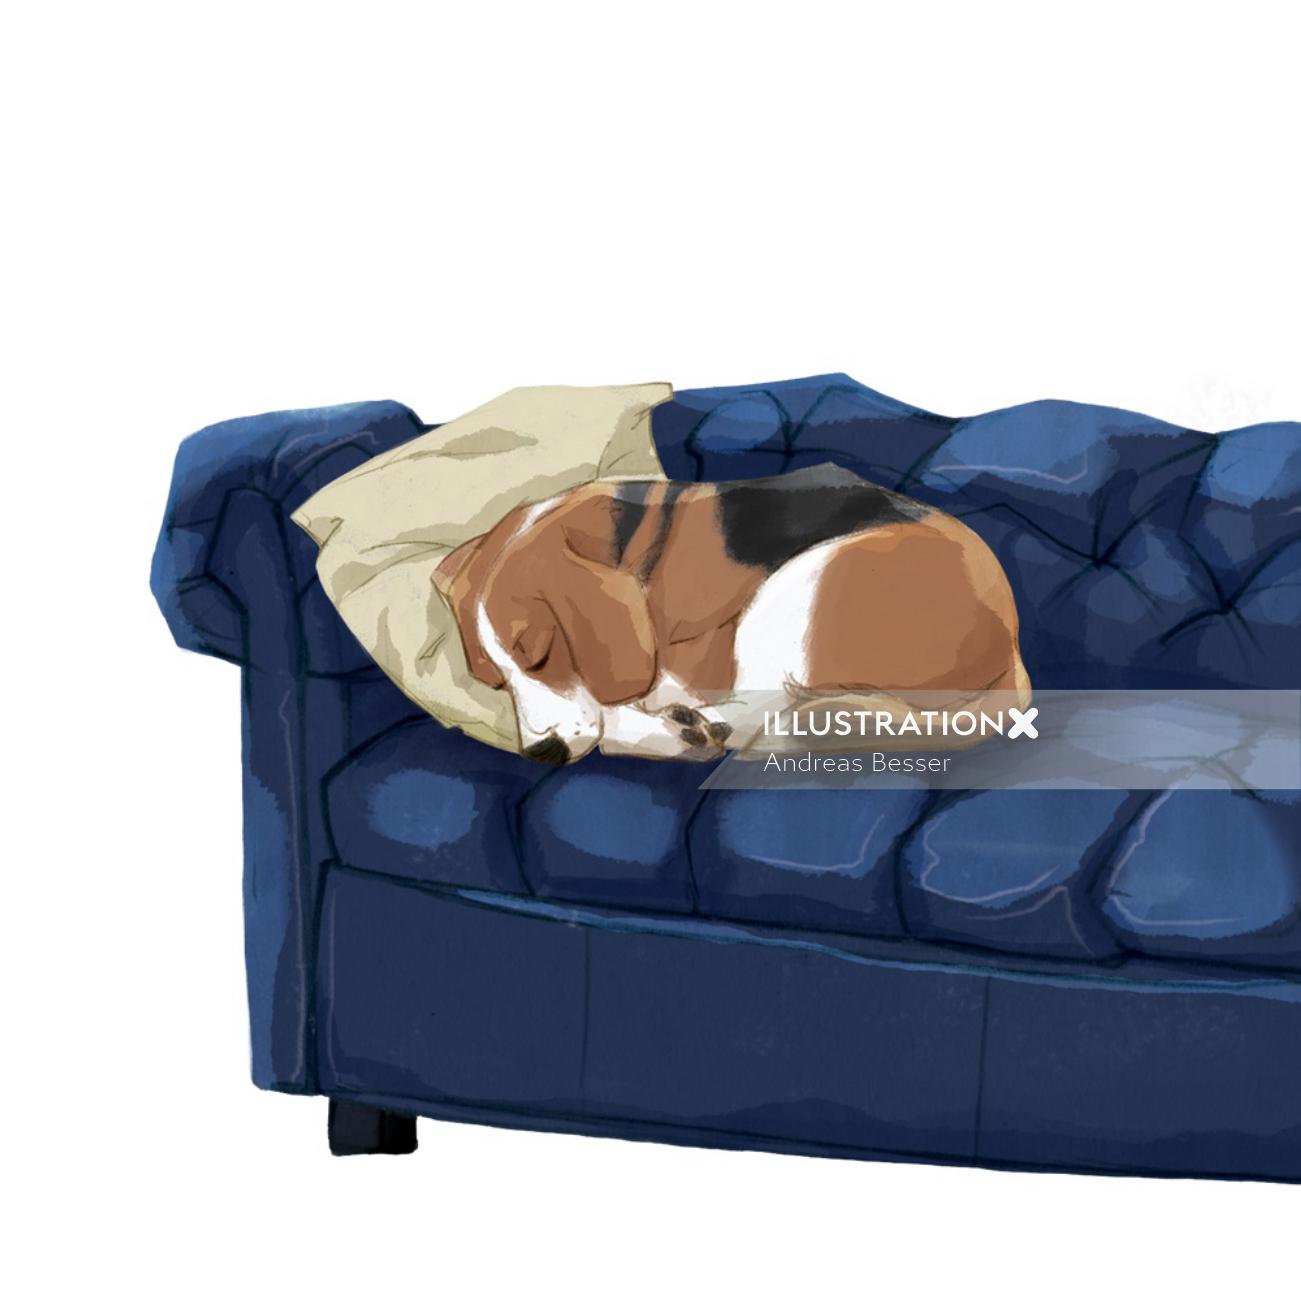 ソファで寝ている犬のイラスト